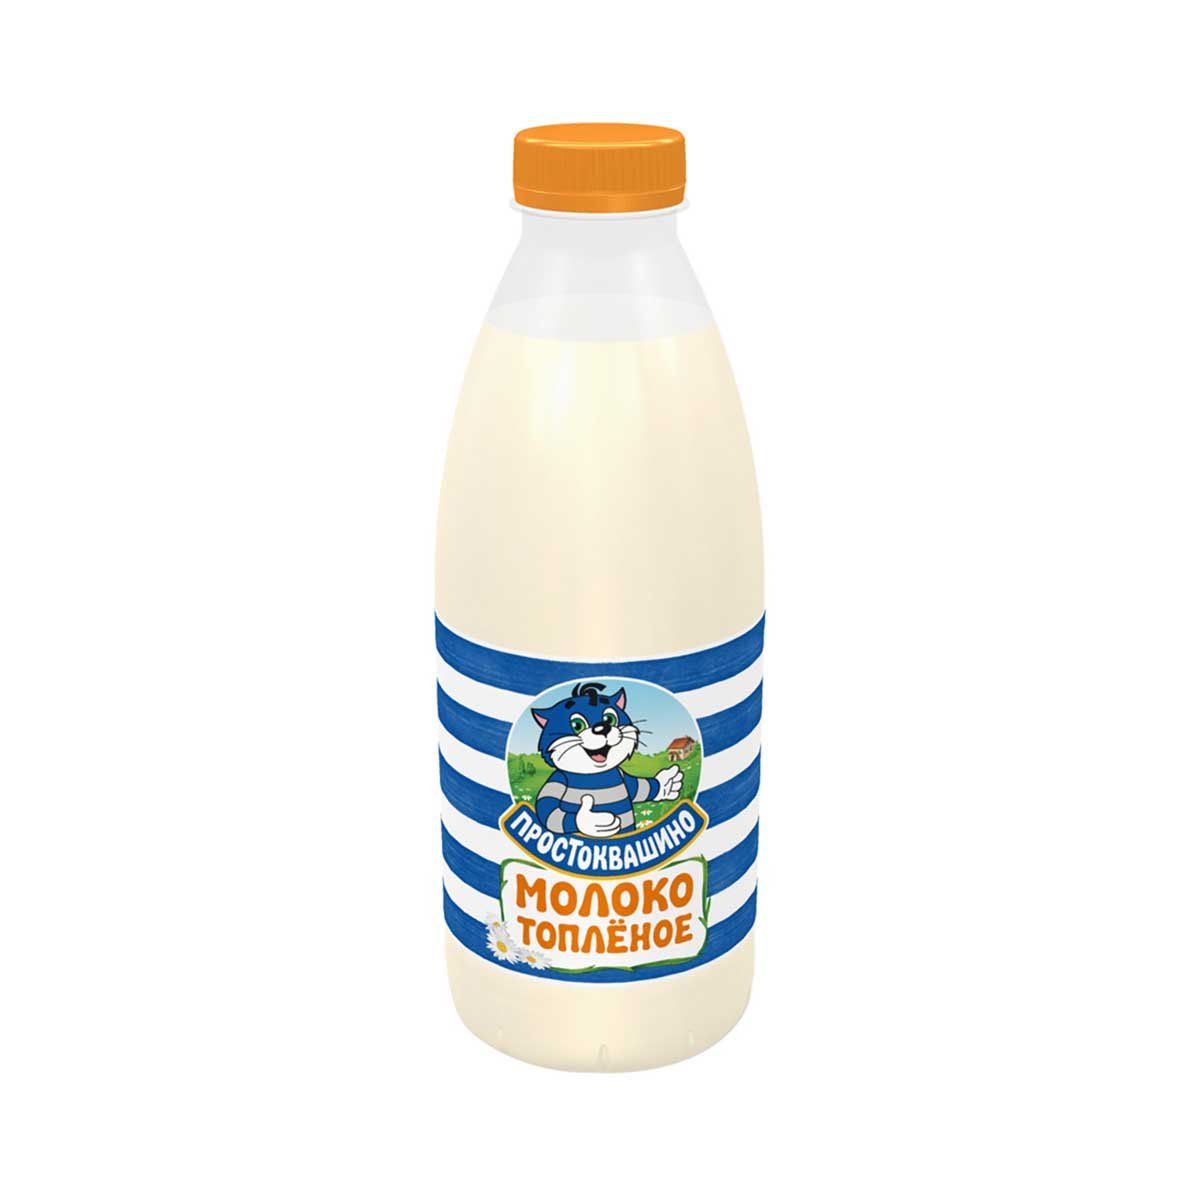 Молоко Простоквашино топленое 3.2% пл/бут 930мл